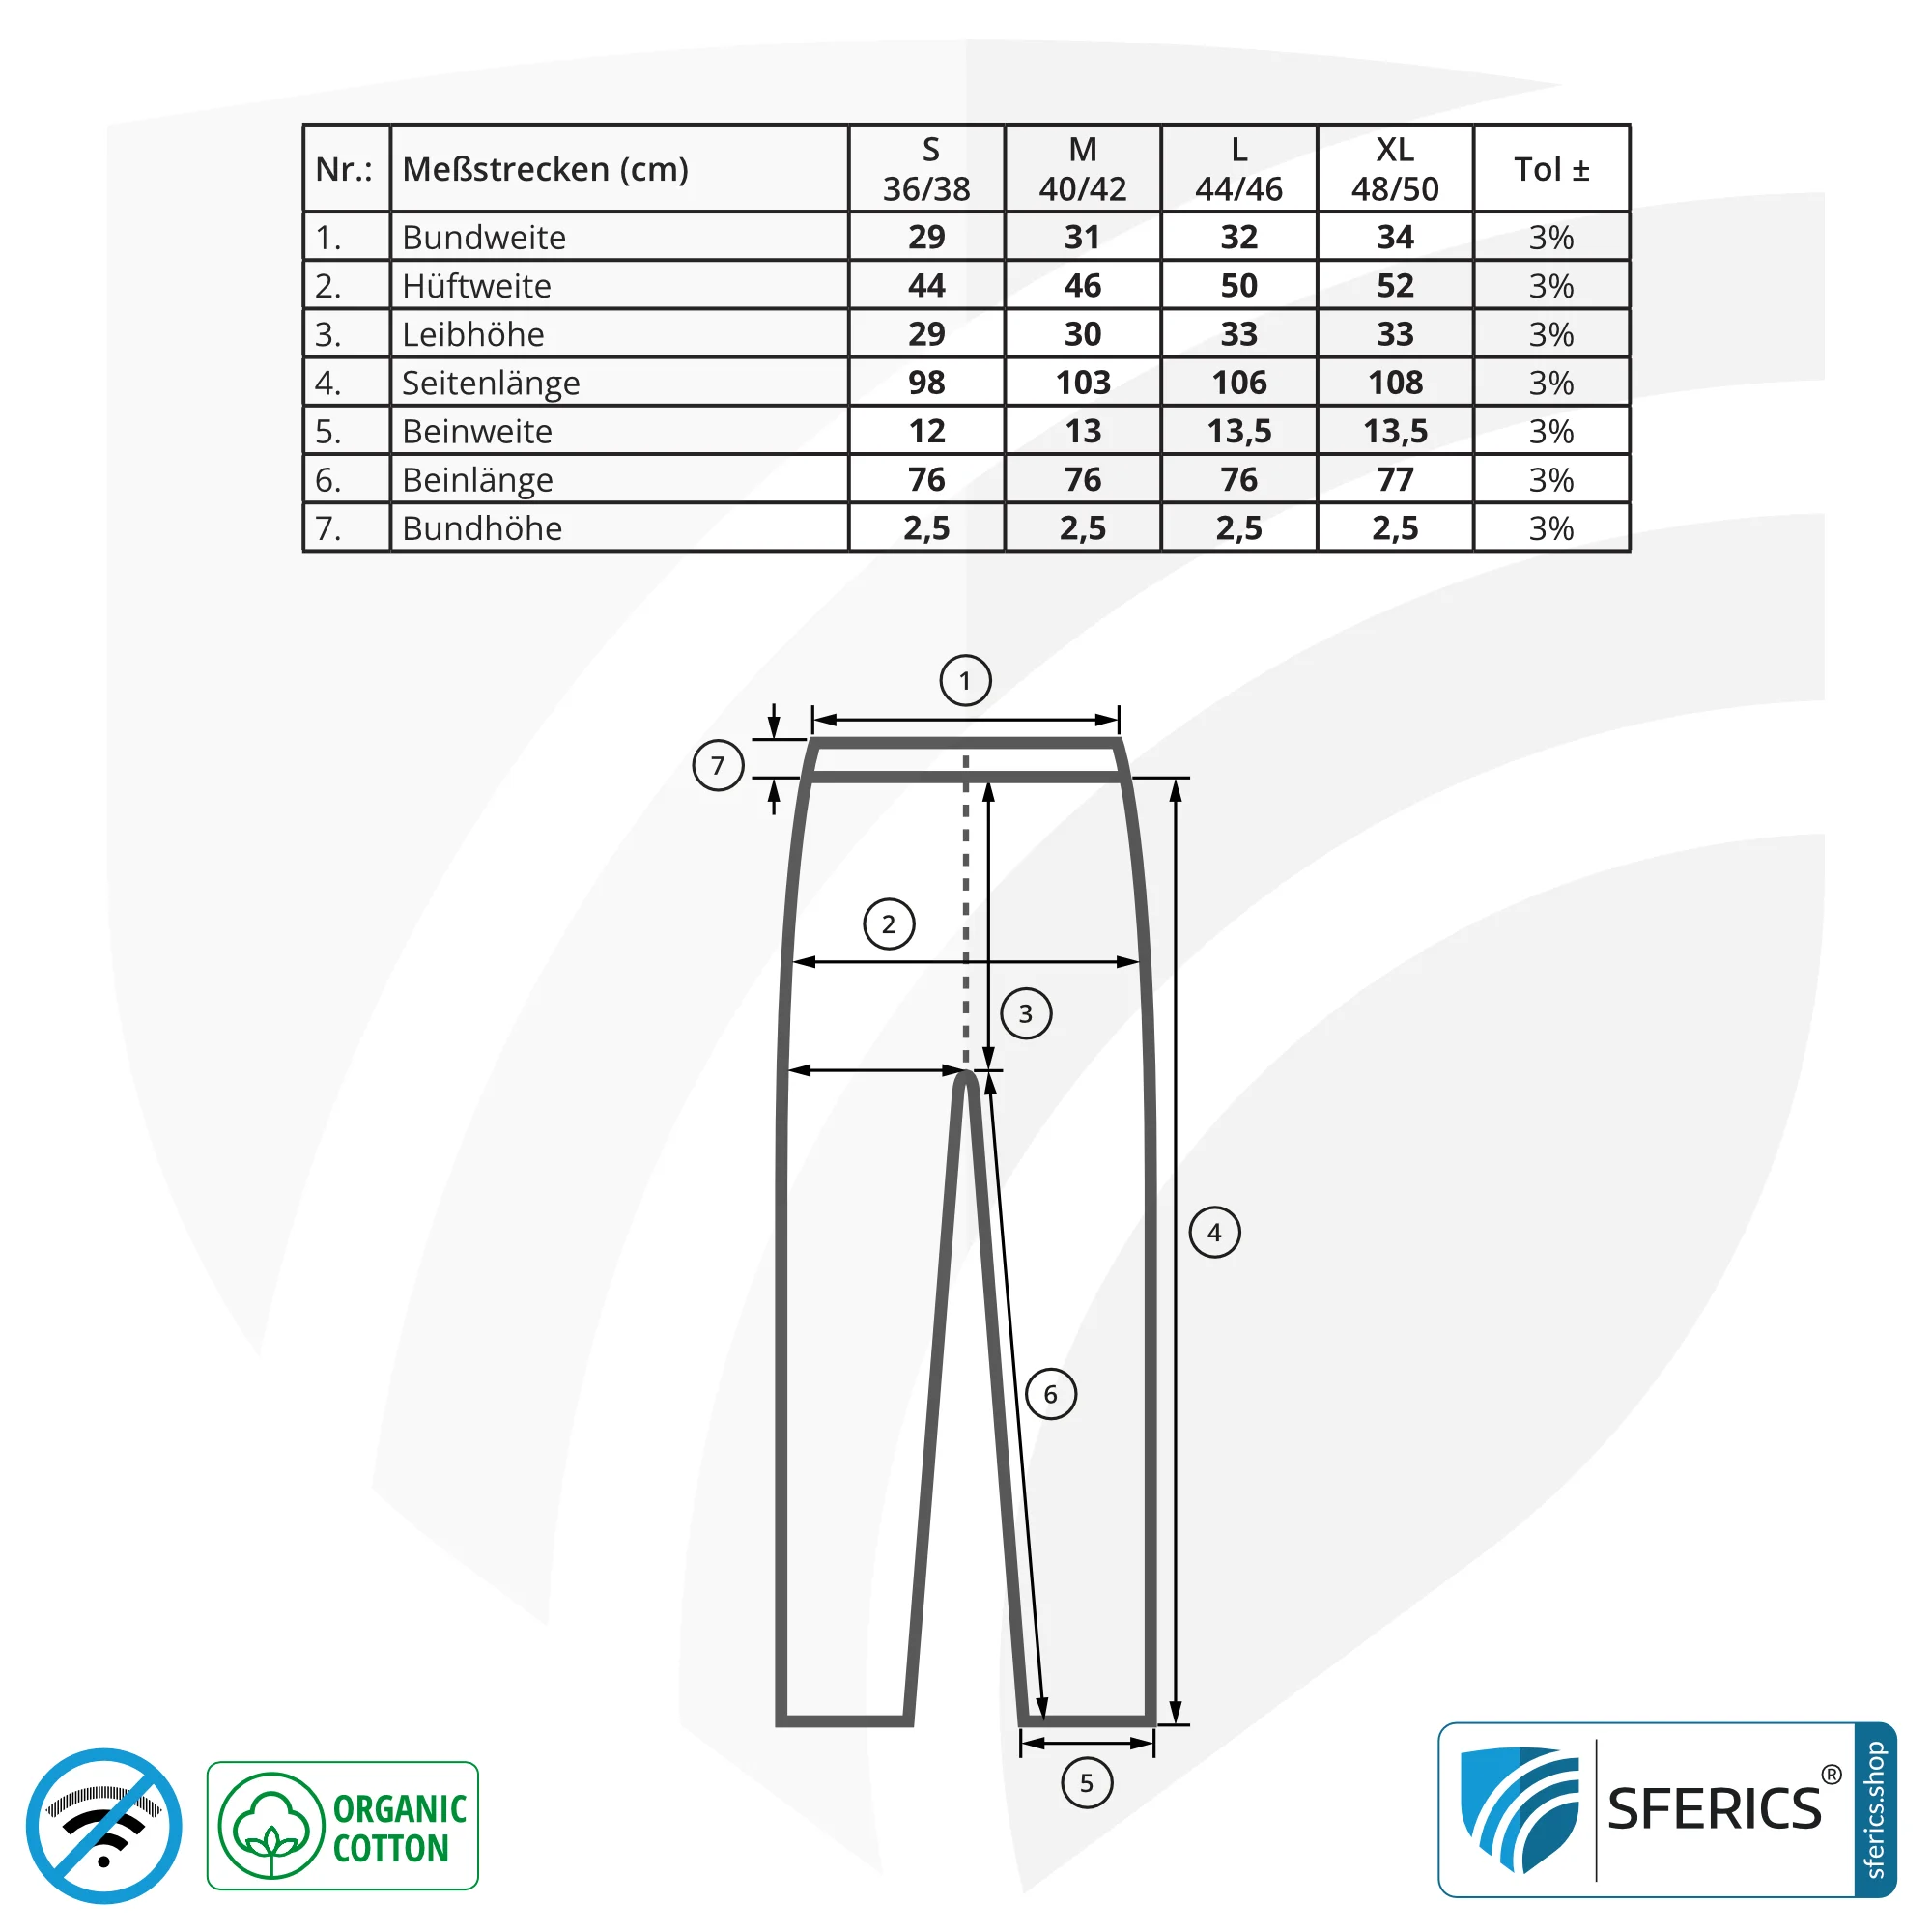 Abschirmende ANTIWAVE Leggings für Damen | Schutz bis zu 30 dB vor HF Elektrosmog (Handy, WLAN, LTE) | Ideal für elektrosensible Menschen